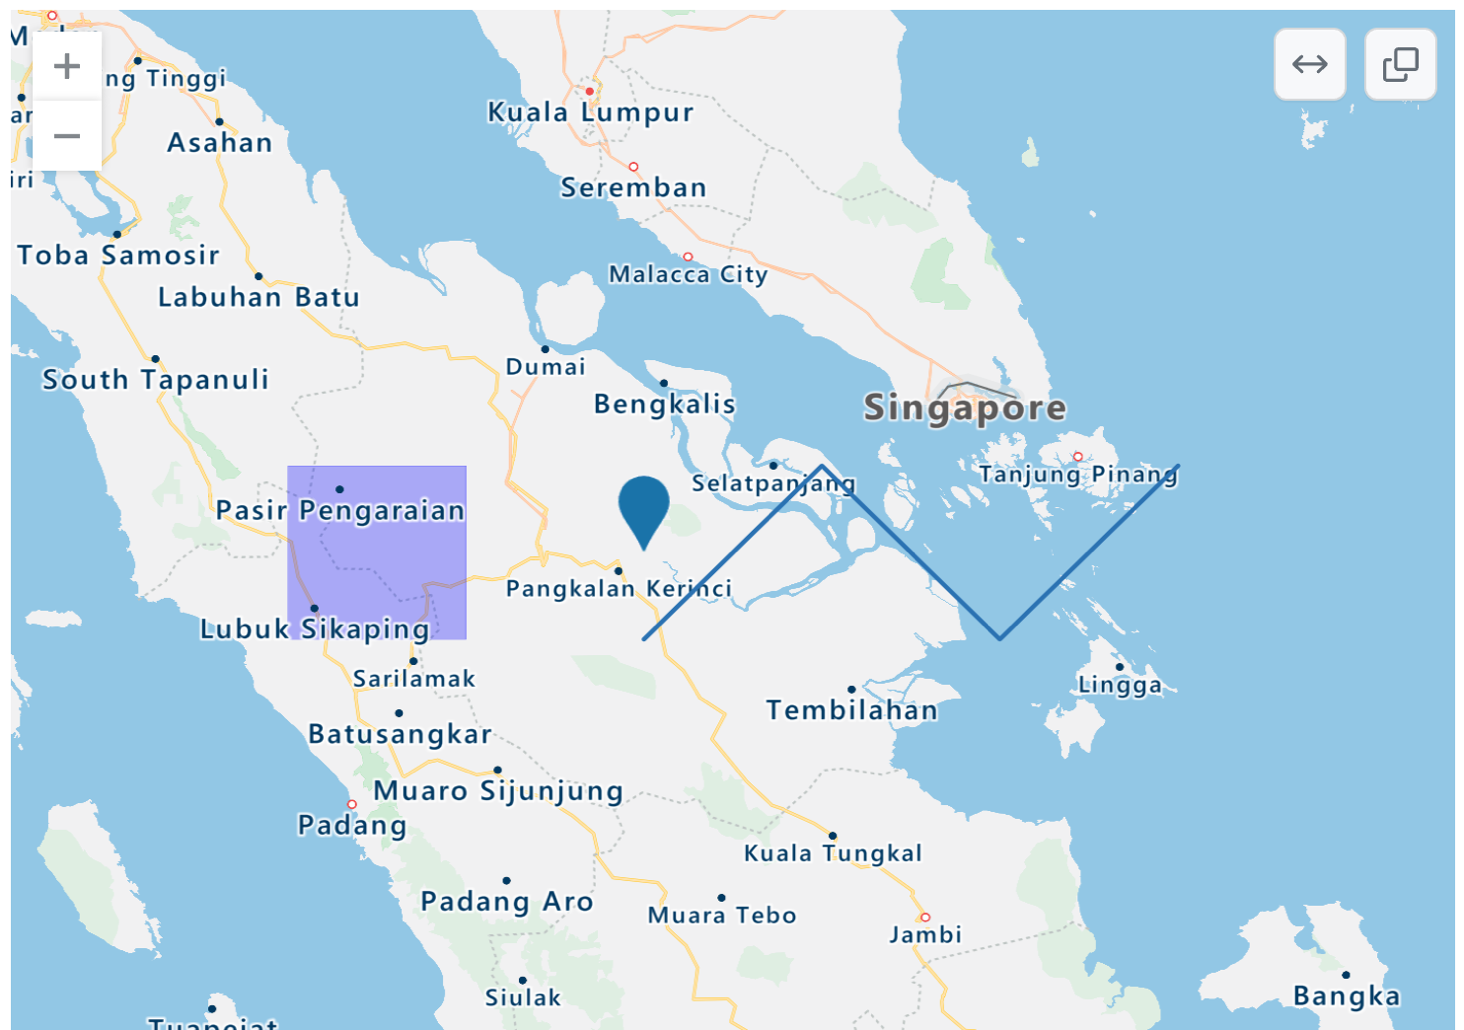 インドネシア西部とシンガポールとマレーシアの一部をレンダリングした TopoJSON 地図のスクリーンショット。青色点、紫色の四角いオーバーレイ、青色のジグザグの線があります。